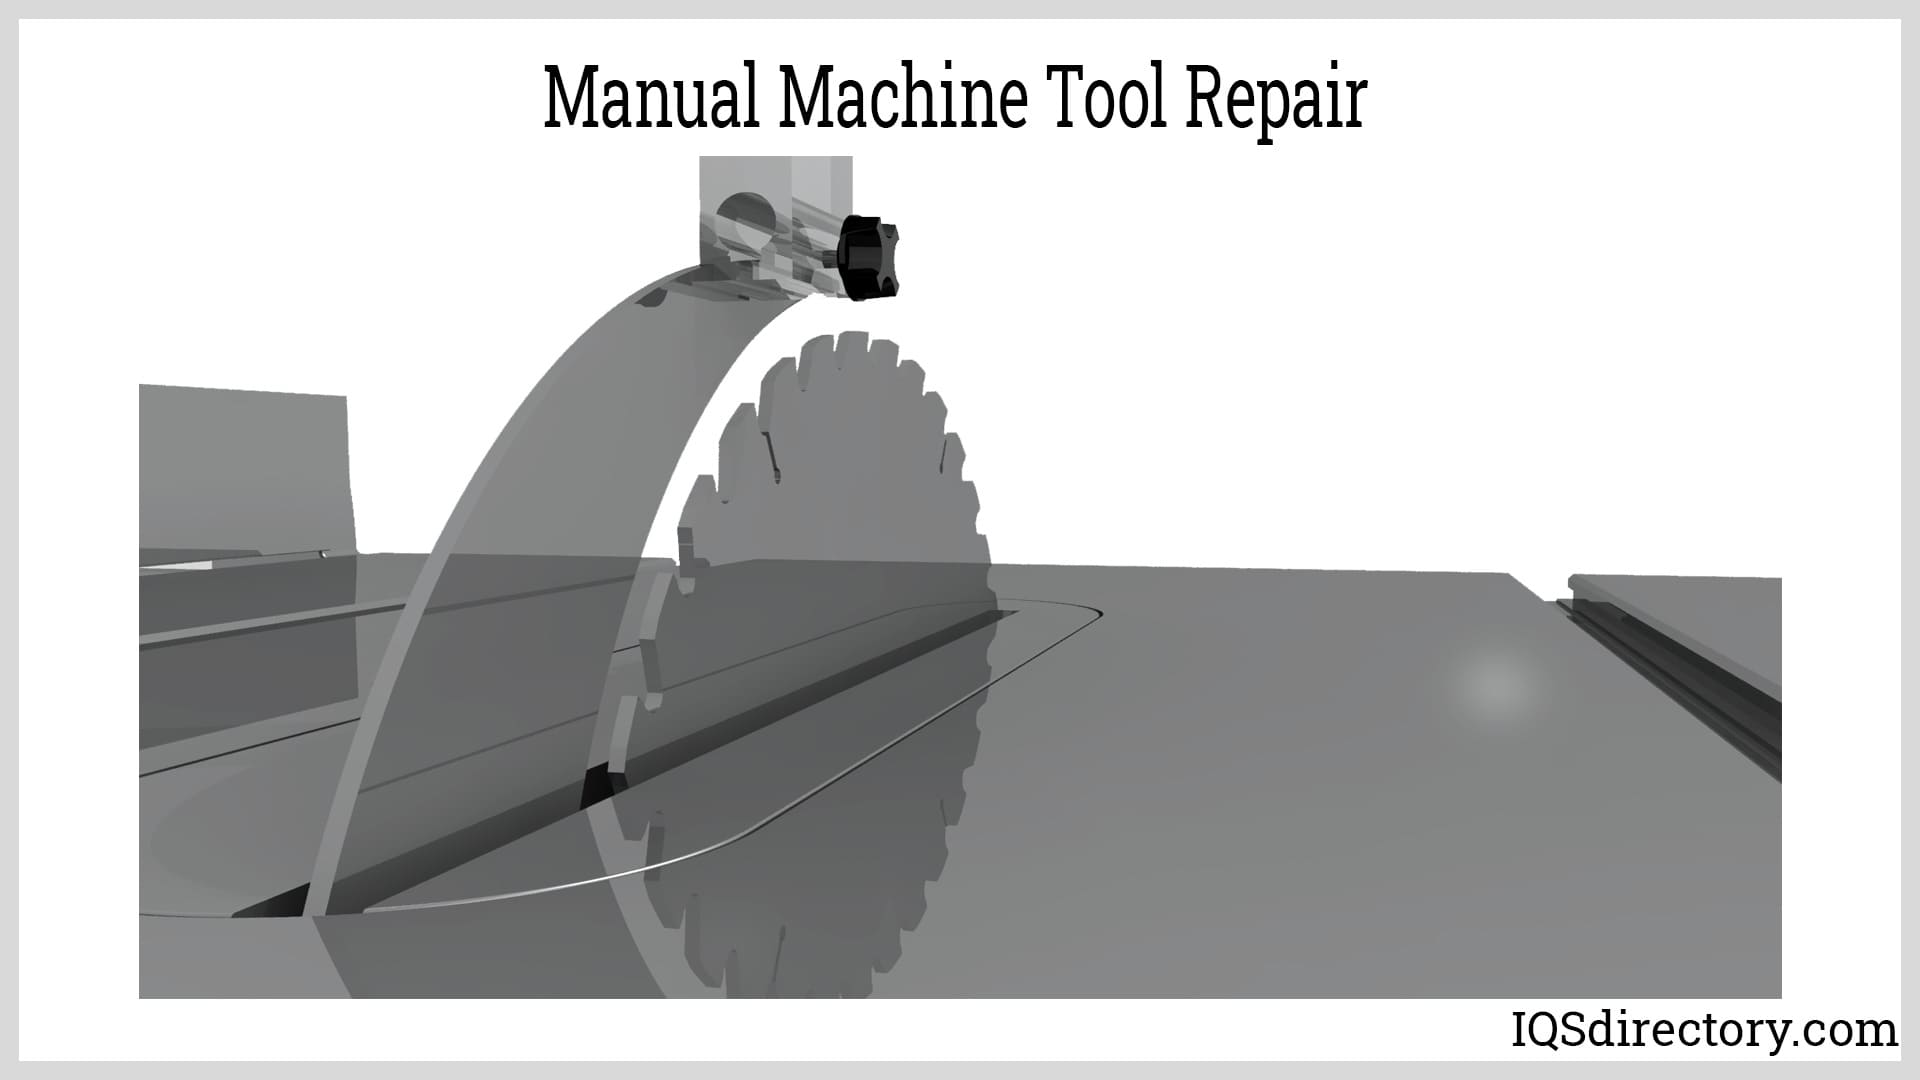 Manual Machine Tool Repair